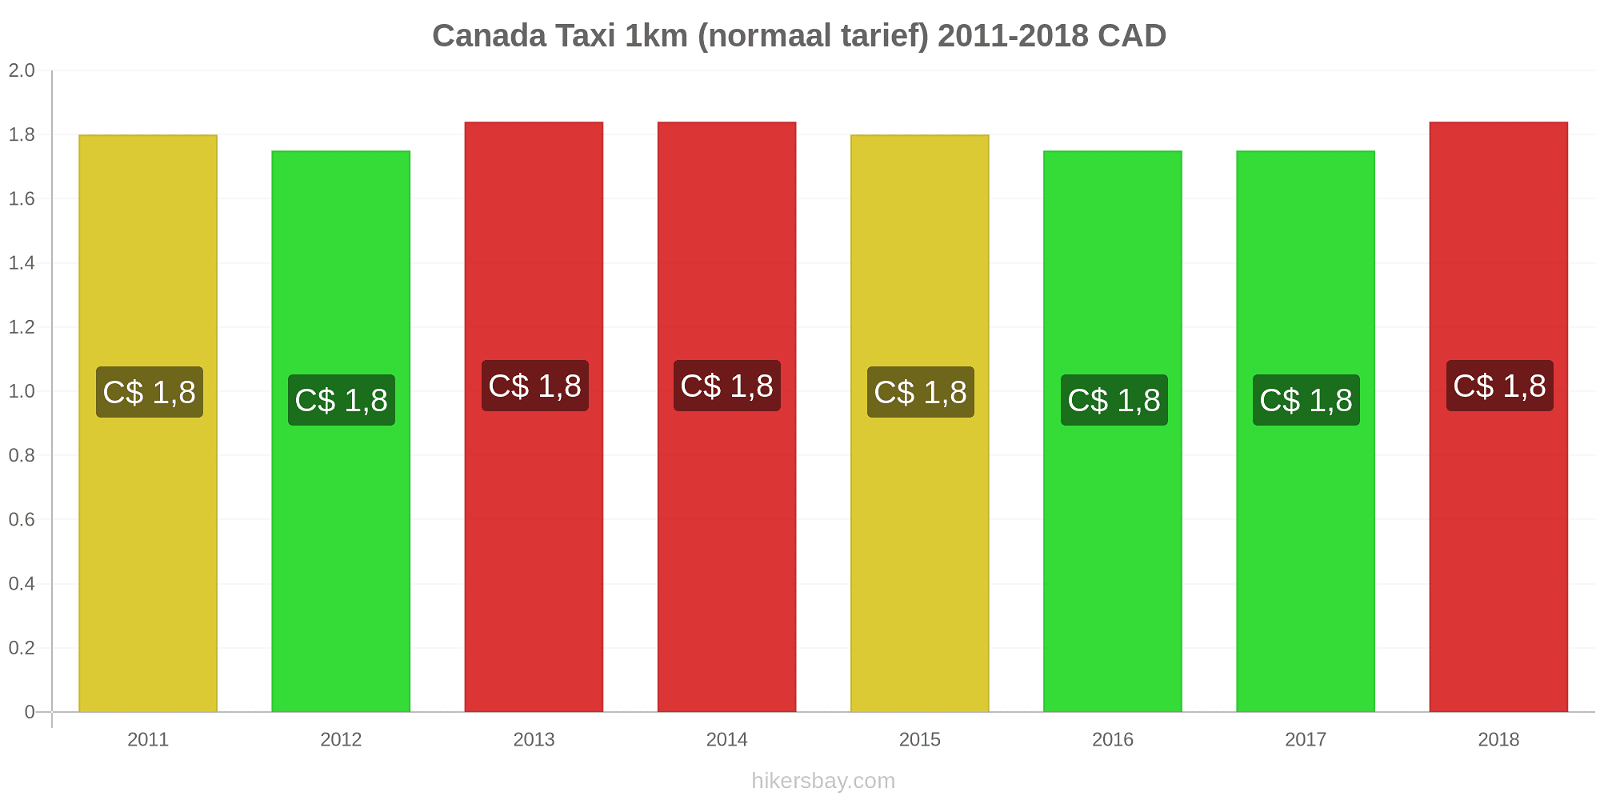 Canada prijswijzigingen Taxi 1km (normaal tarief) hikersbay.com